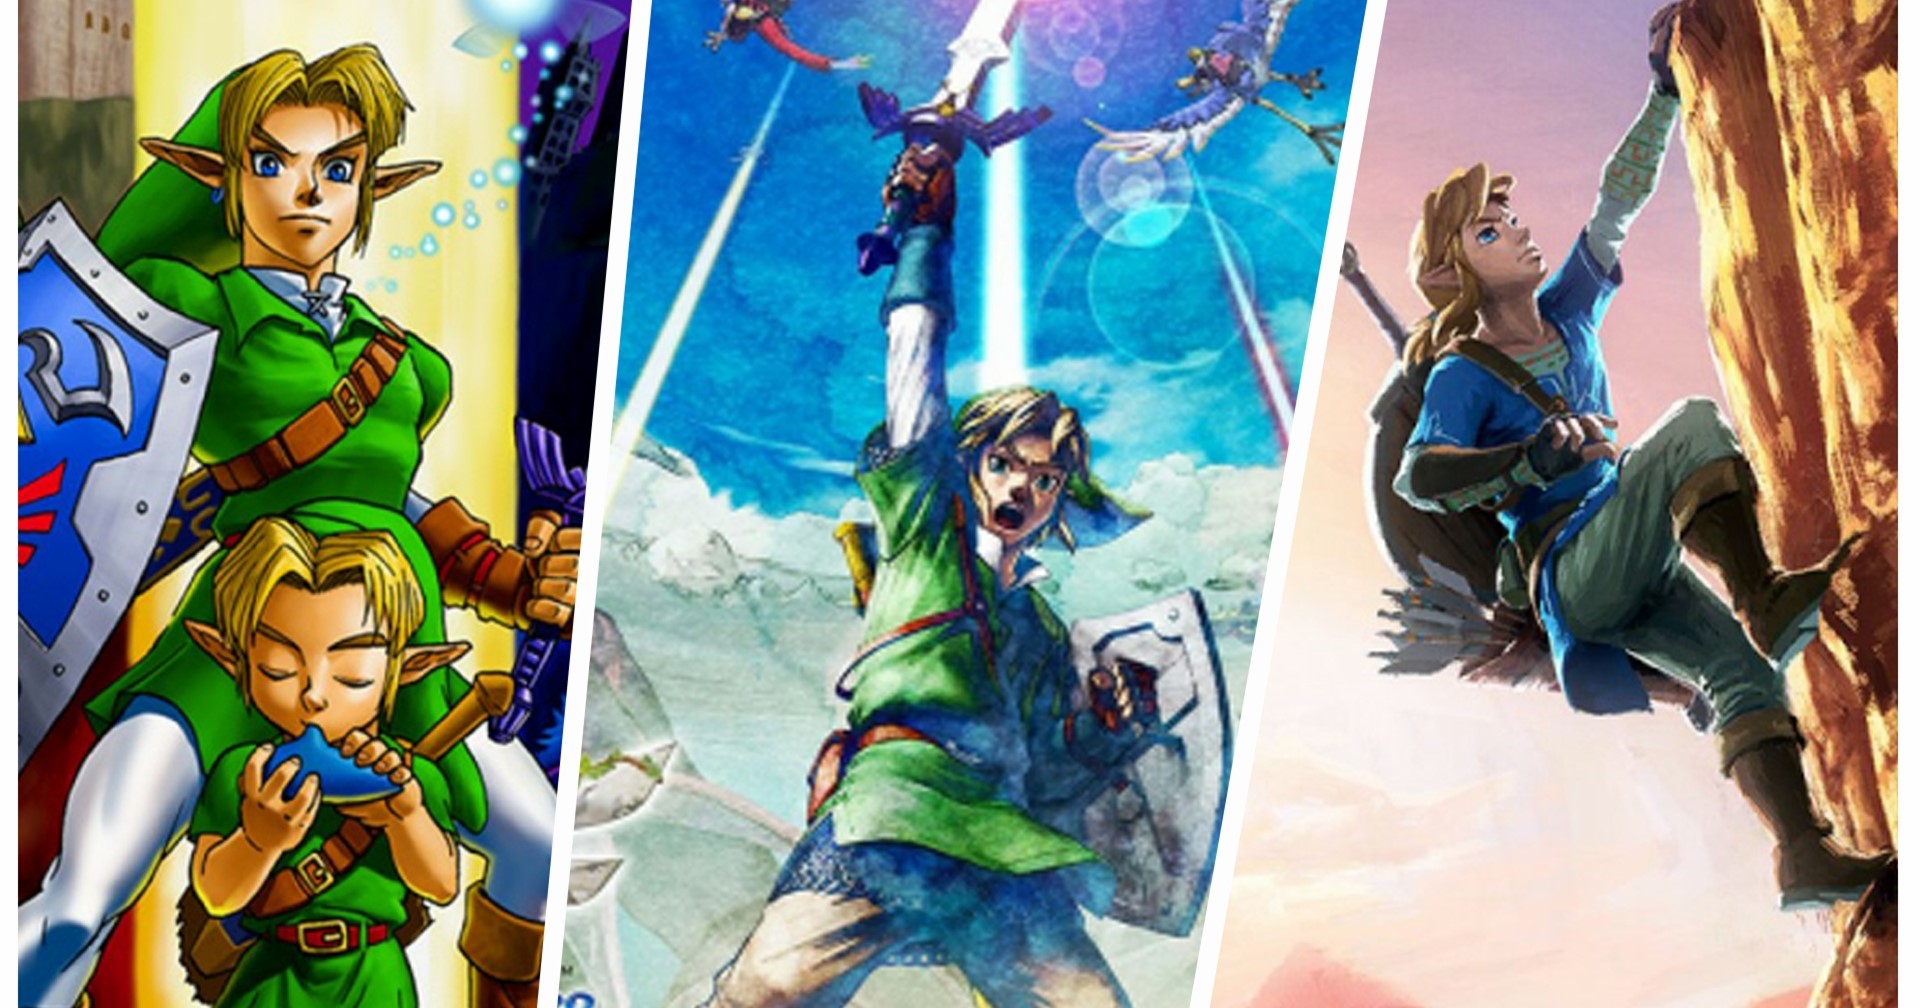 [บทความ] เกม Zelda ภาค 3 มิติ ที่ควรหามาเล่นก่อน Tears of the Kingdom